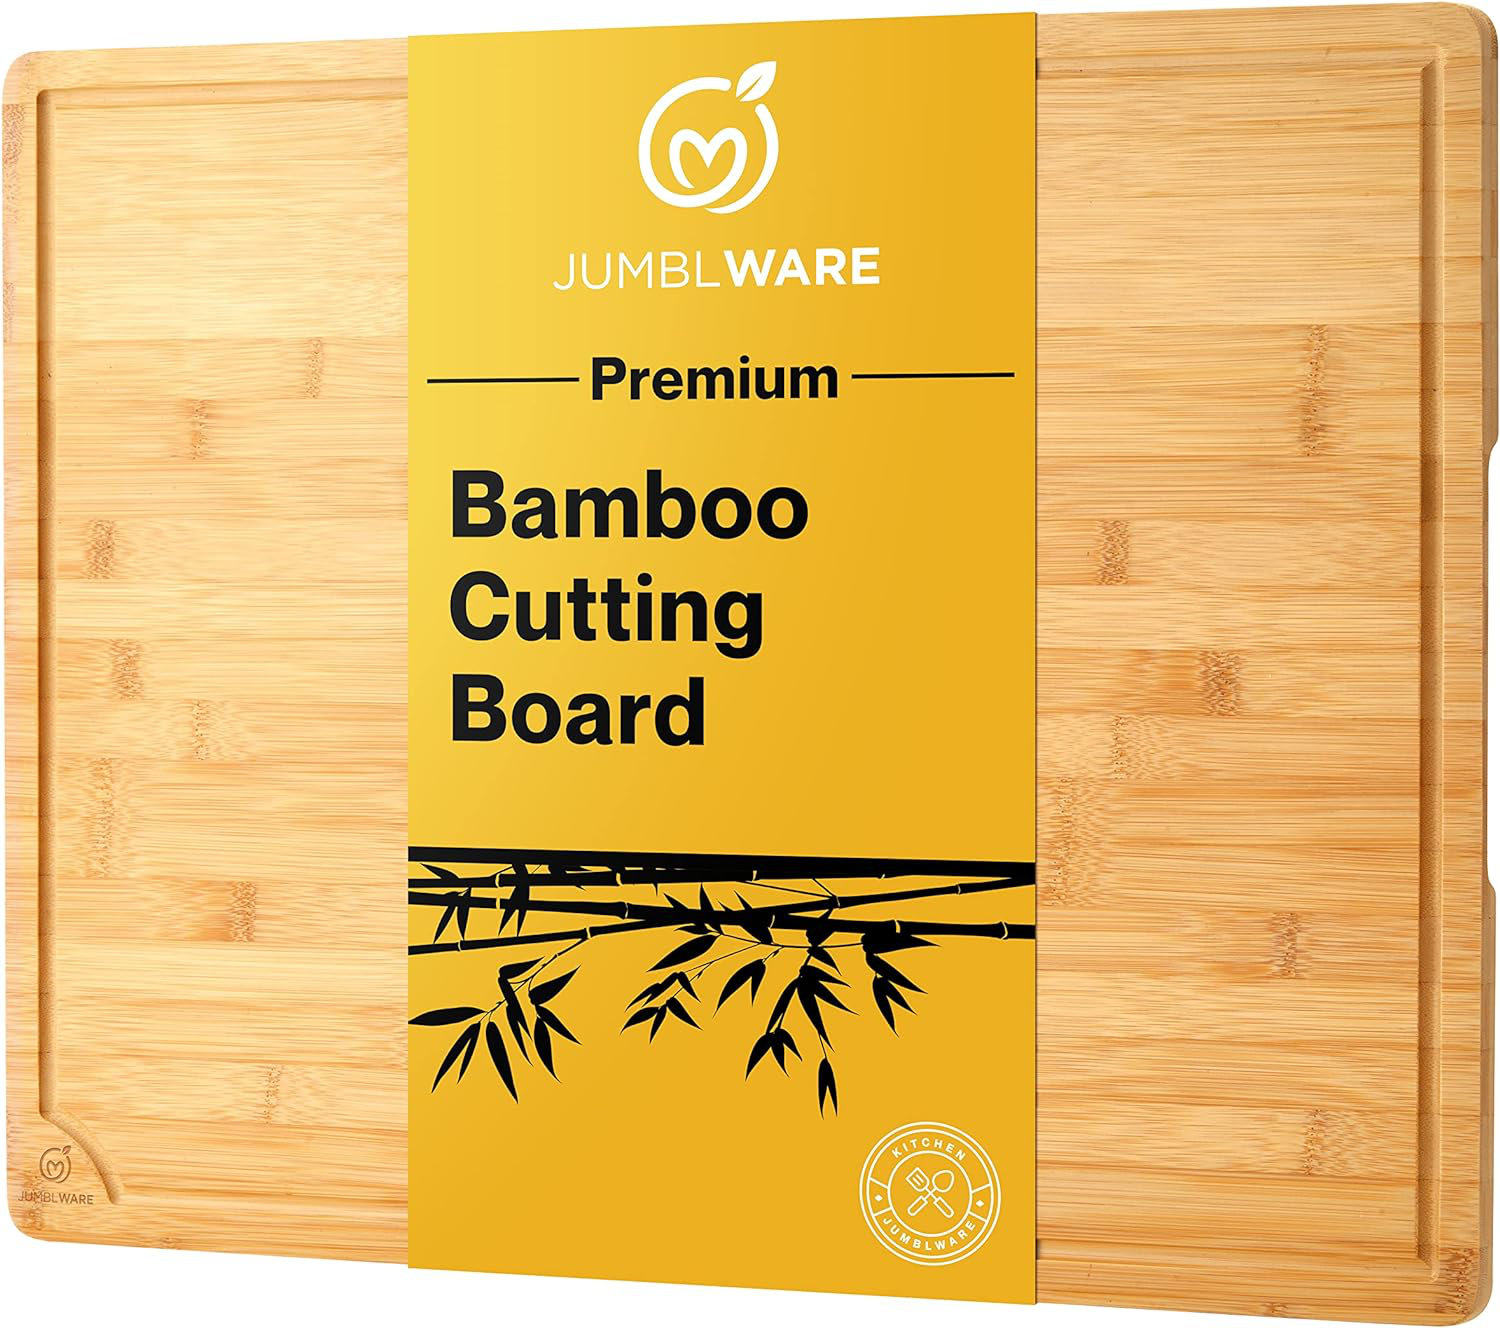 https://assets.wfcdn.com/im/72265212/compr-r85/2583/258361445/jumblware-bamboo-cutting-board-water-resistant-lightweight.jpg